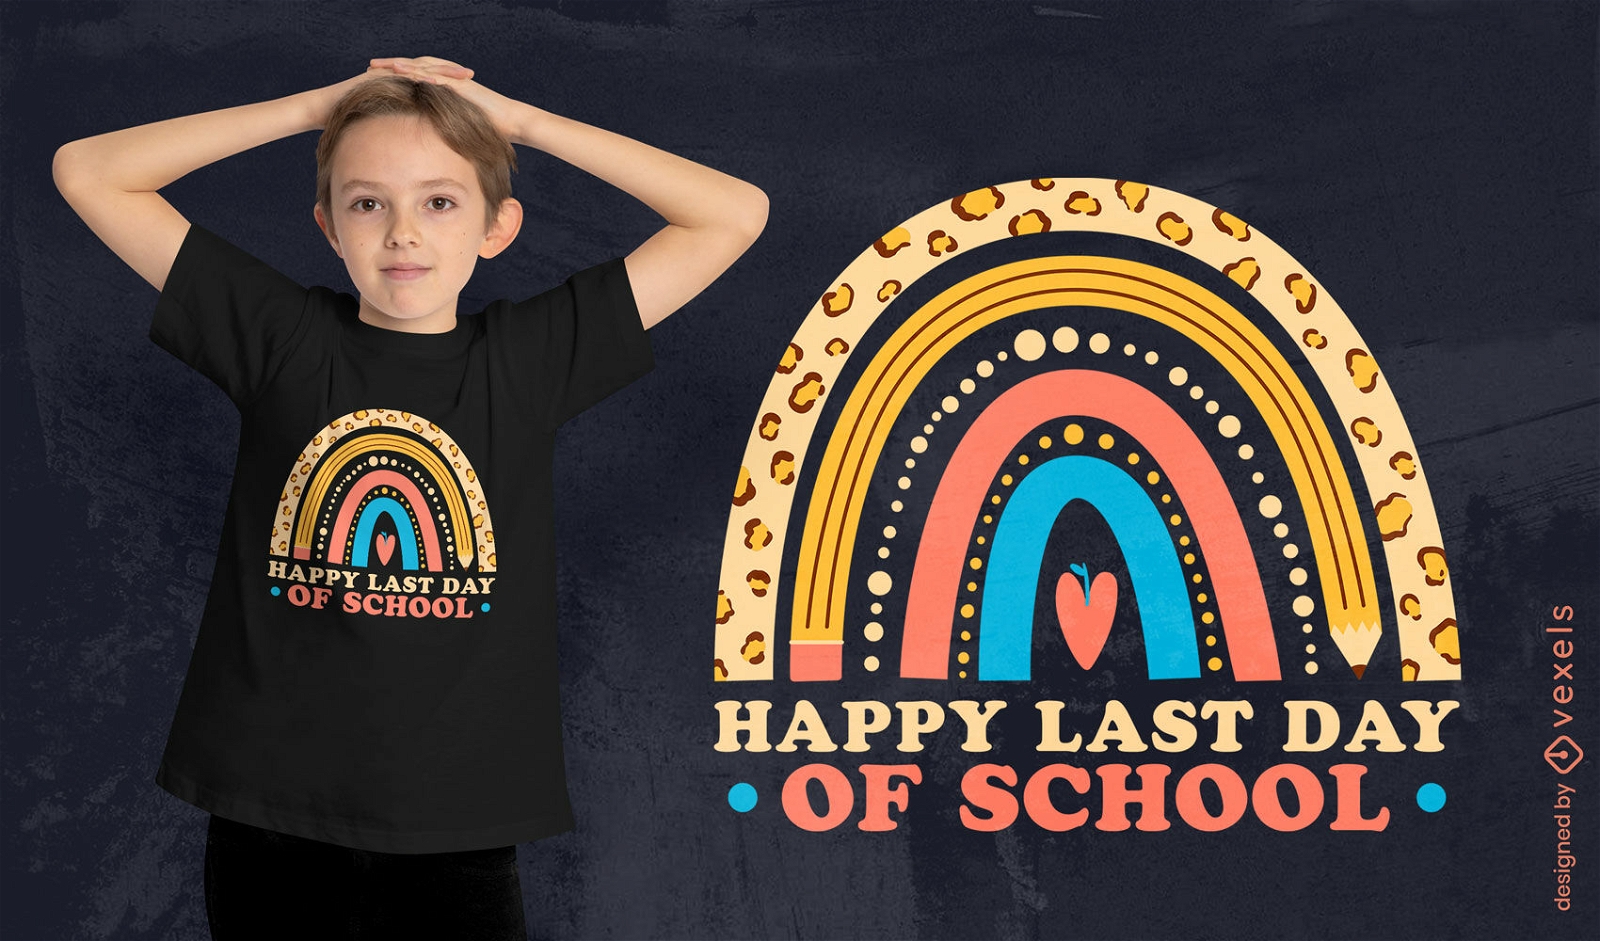 Regenbogen-T-Shirt-Design für den letzten Schultag